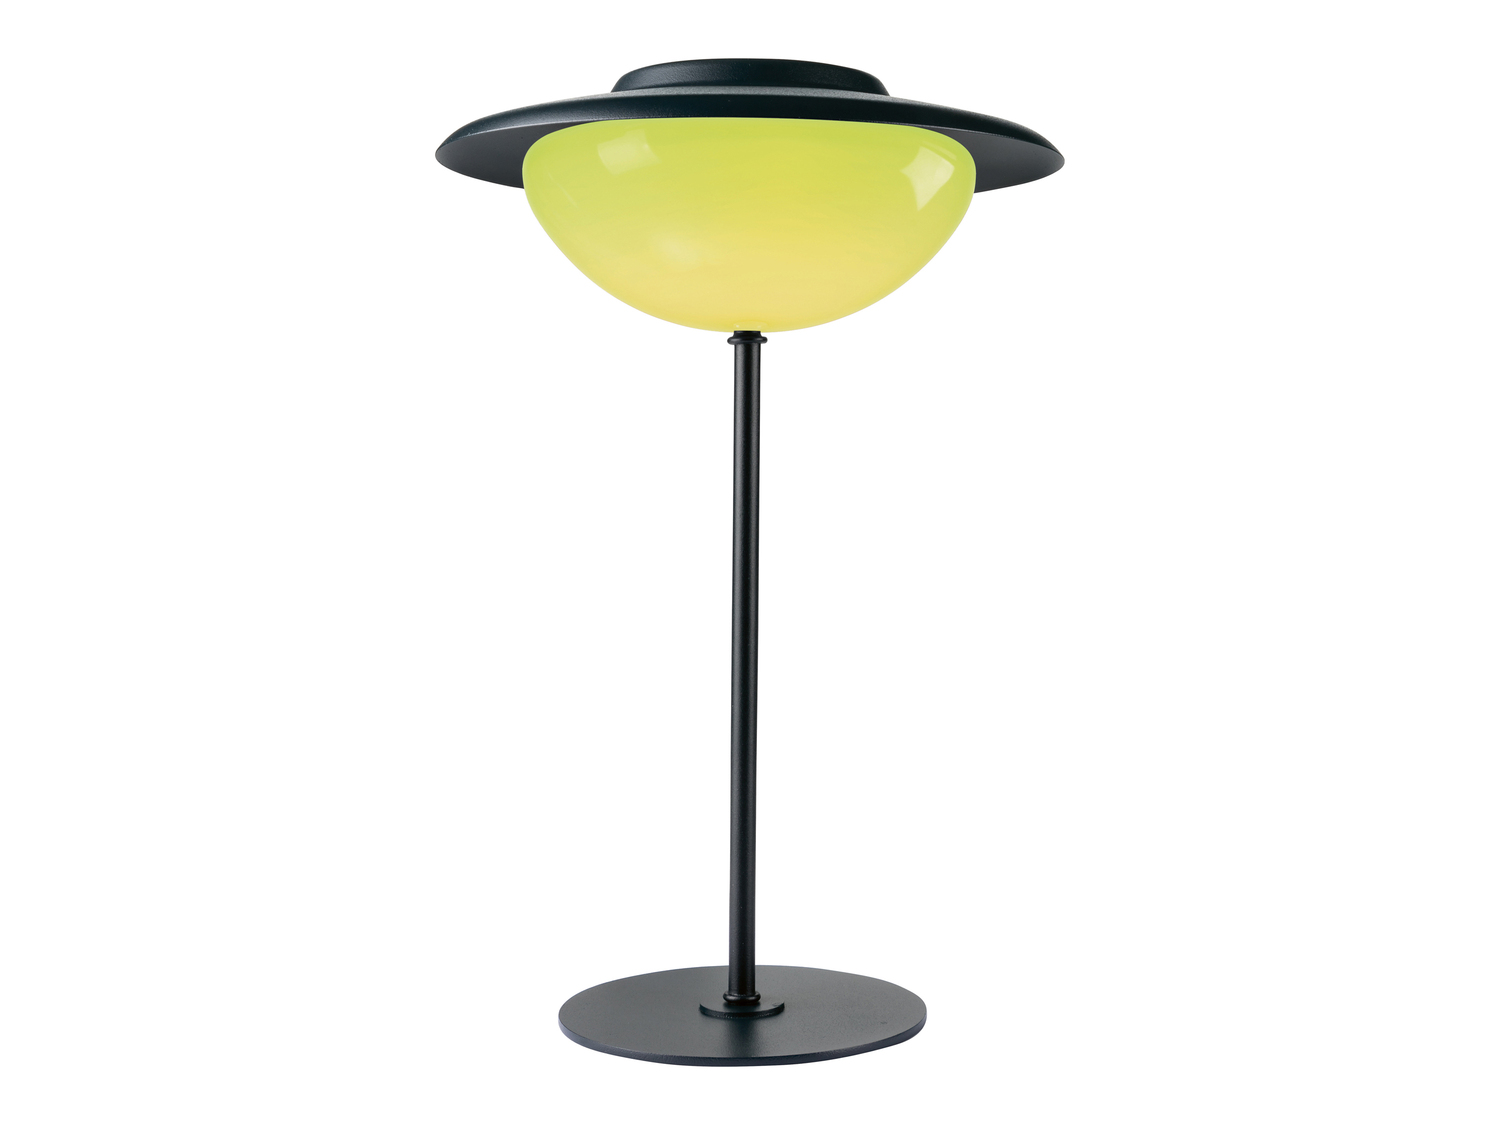 Lampada LED 3 in 1 Livarno Lux, prezzo 24.99 € 
- Da tavolo con base inclusa
- ...